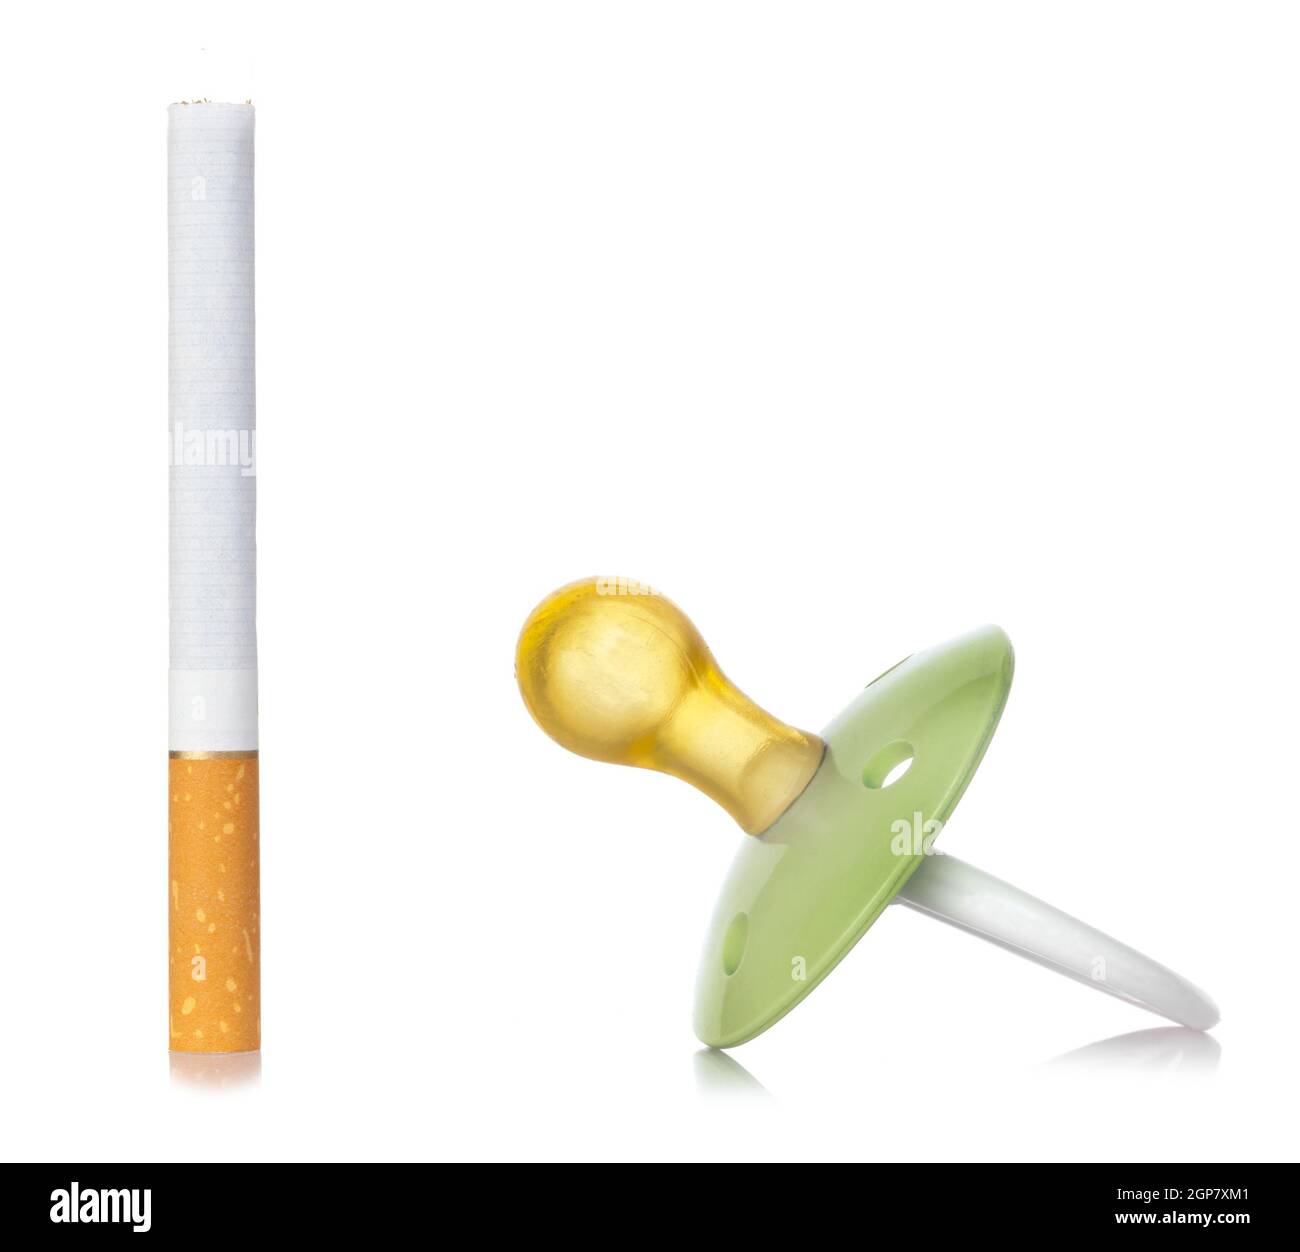 Pacifier Cigarette Stockfotos und -bilder Kaufen - Alamy